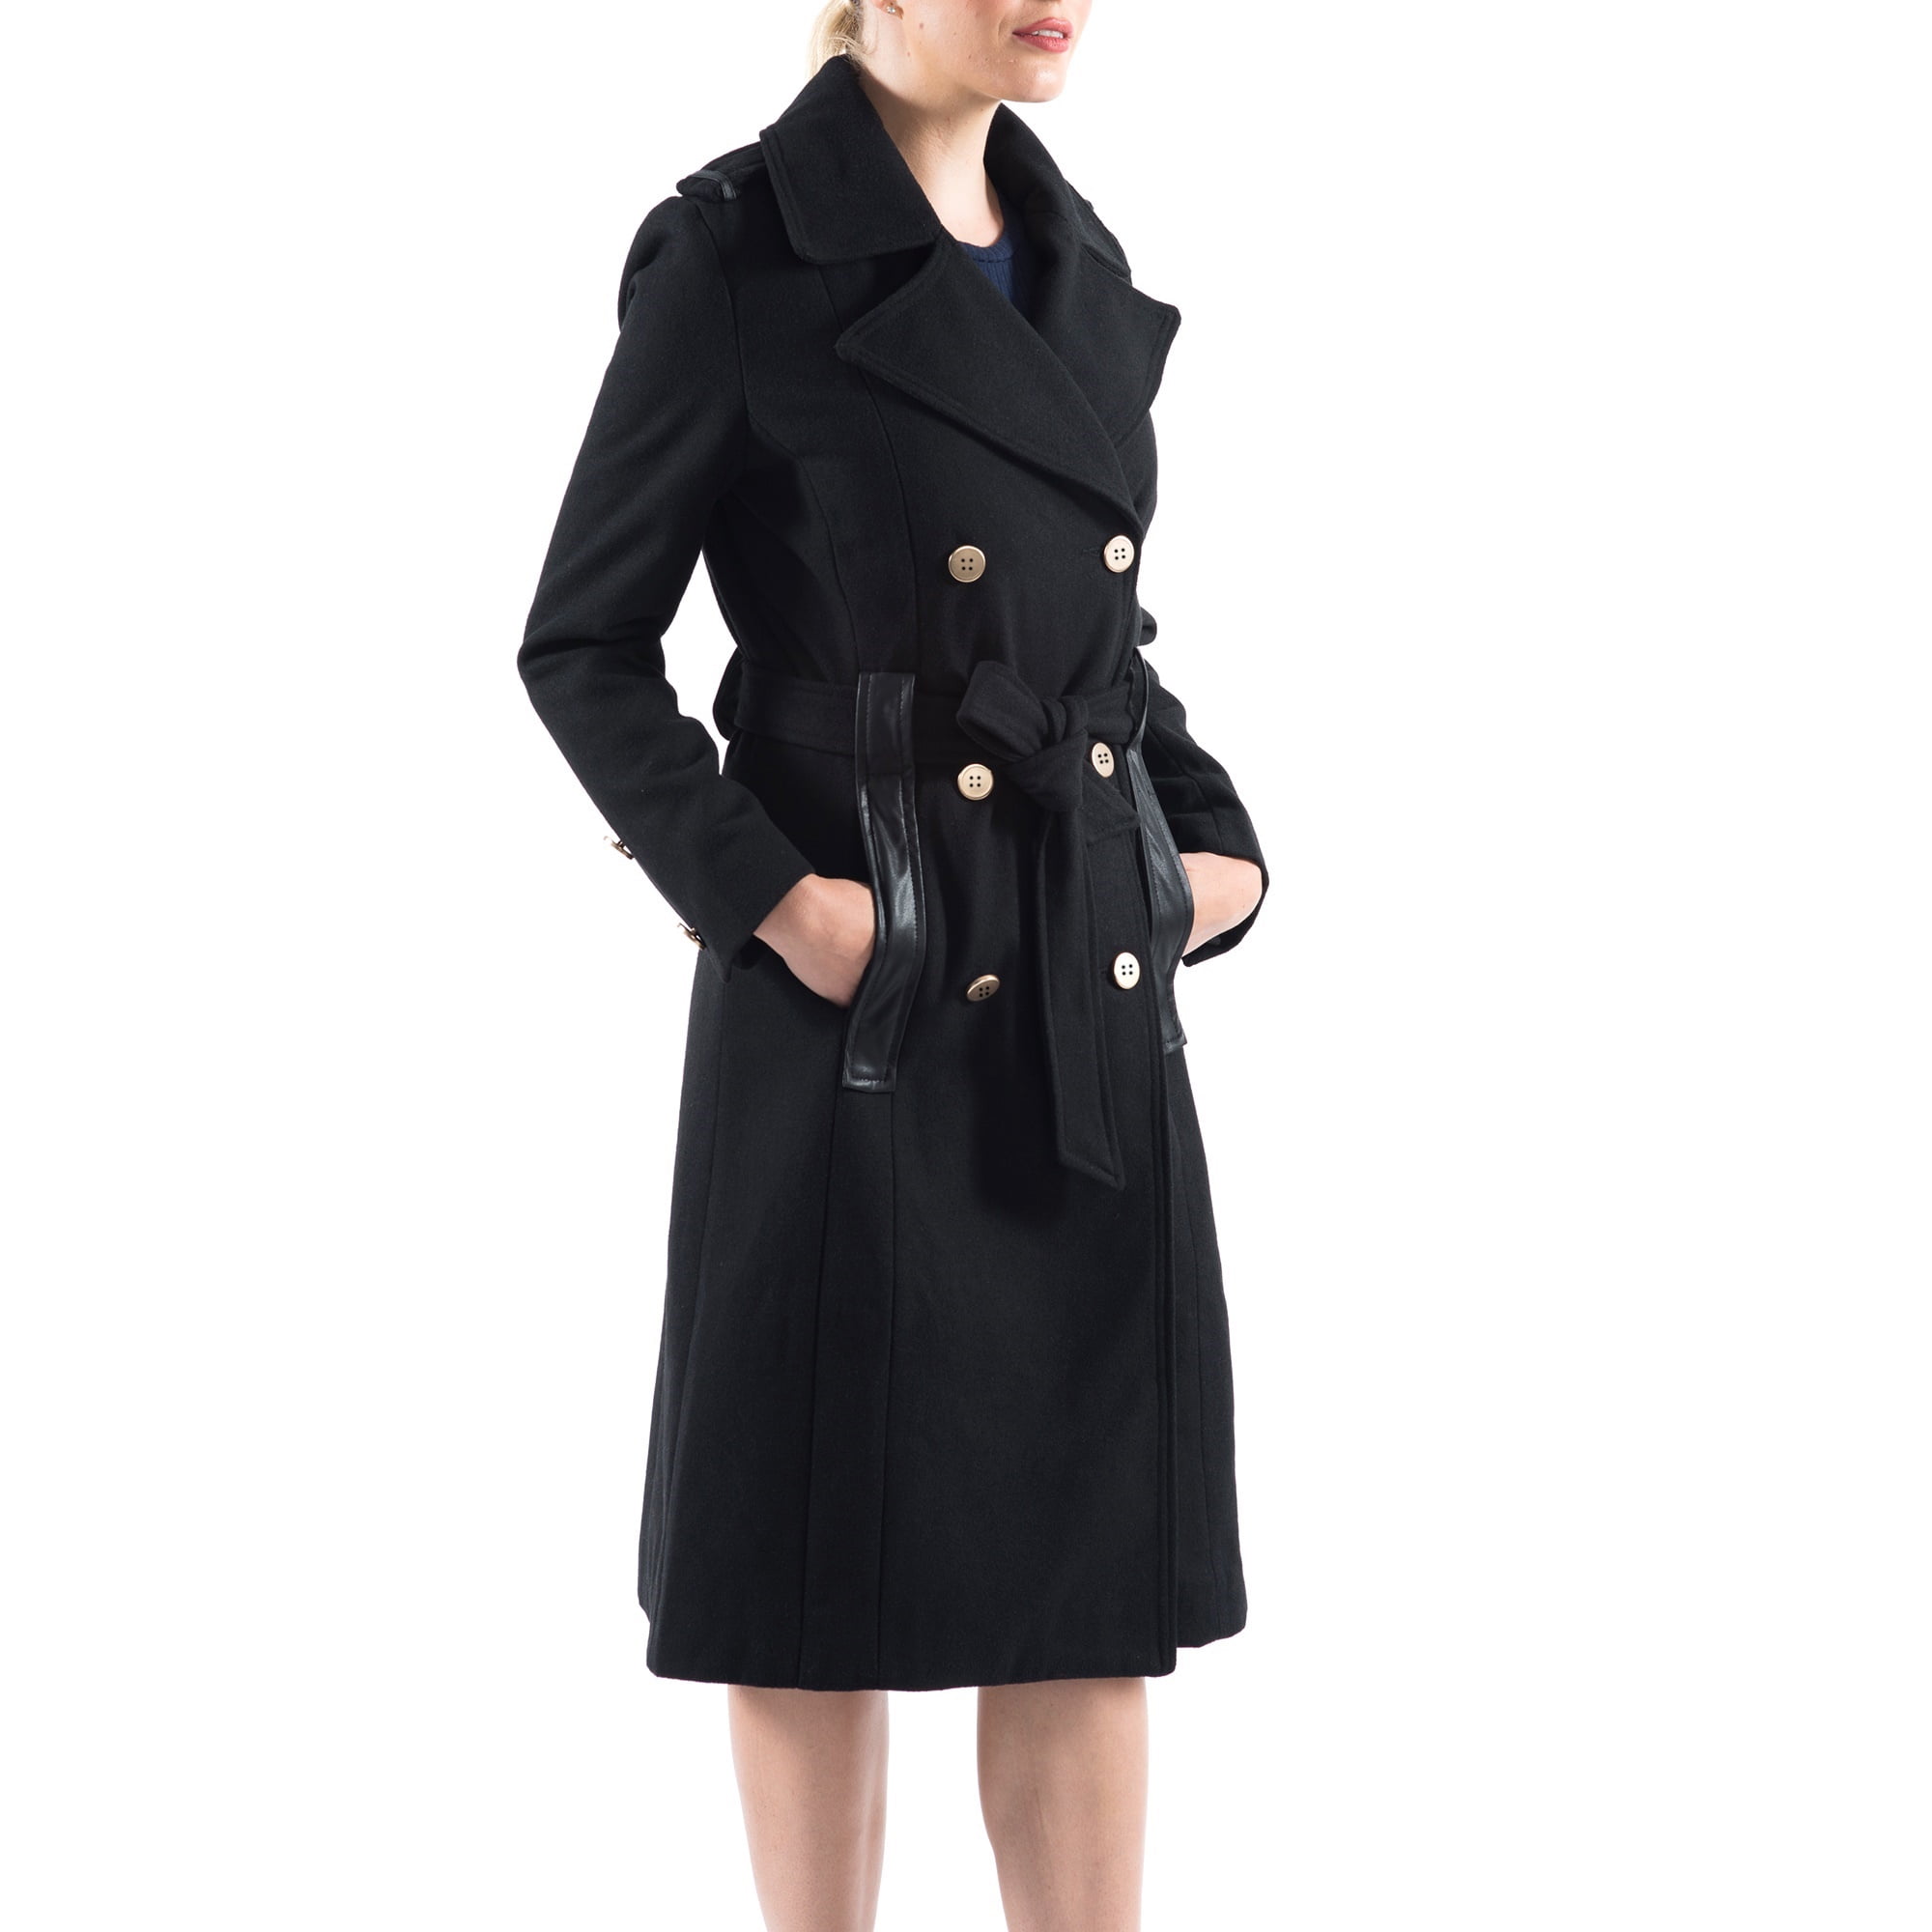 Women's Double-Breasted Lapel Trench Outwear Coat Slim Long Overcoat Wool Blend